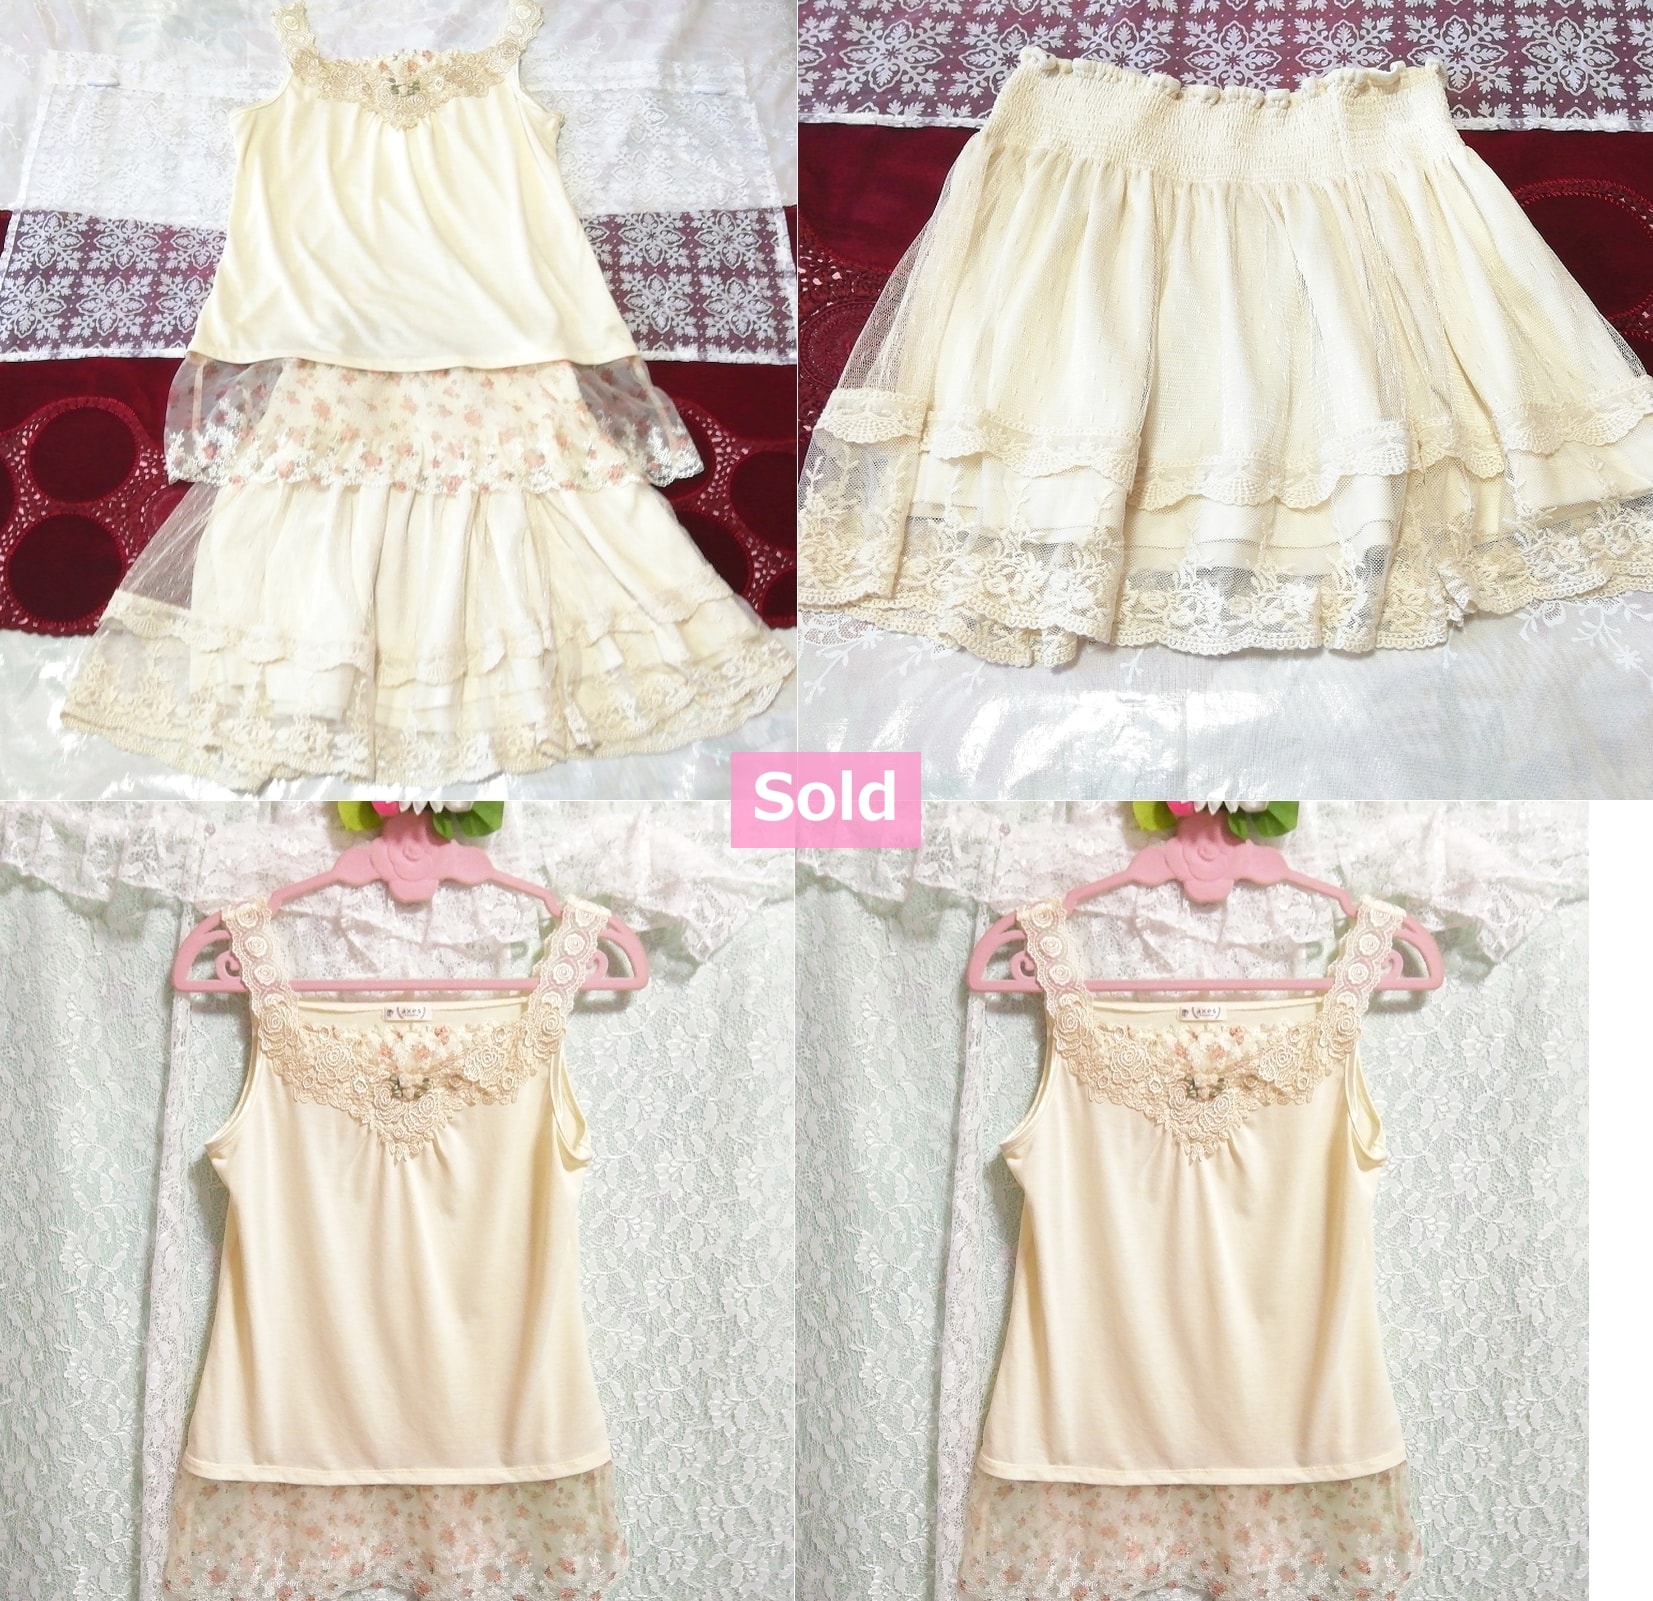 Камзол-пеньюар с цветочной вышивкой белого цвета, ночная рубашка, кружевная мини-юбка 2р., юбка длиной до колена, размер м